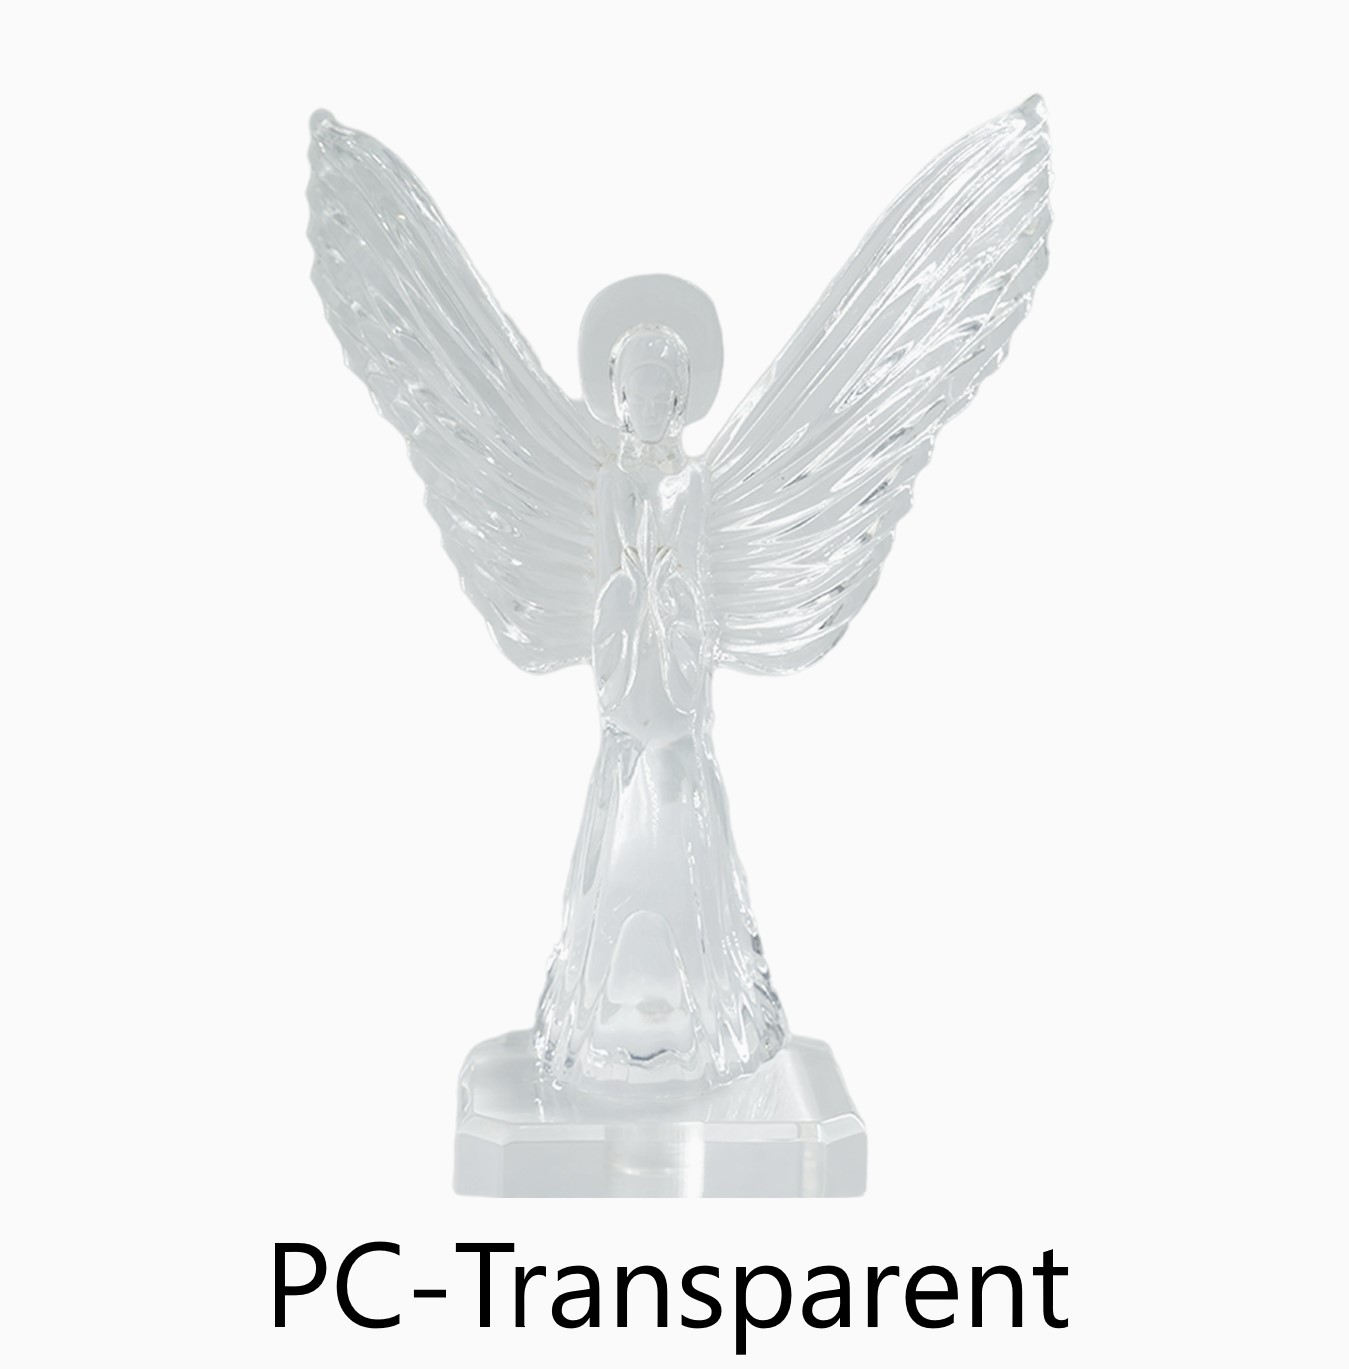 材質 : PC 透明
尺寸 : 140*52*251